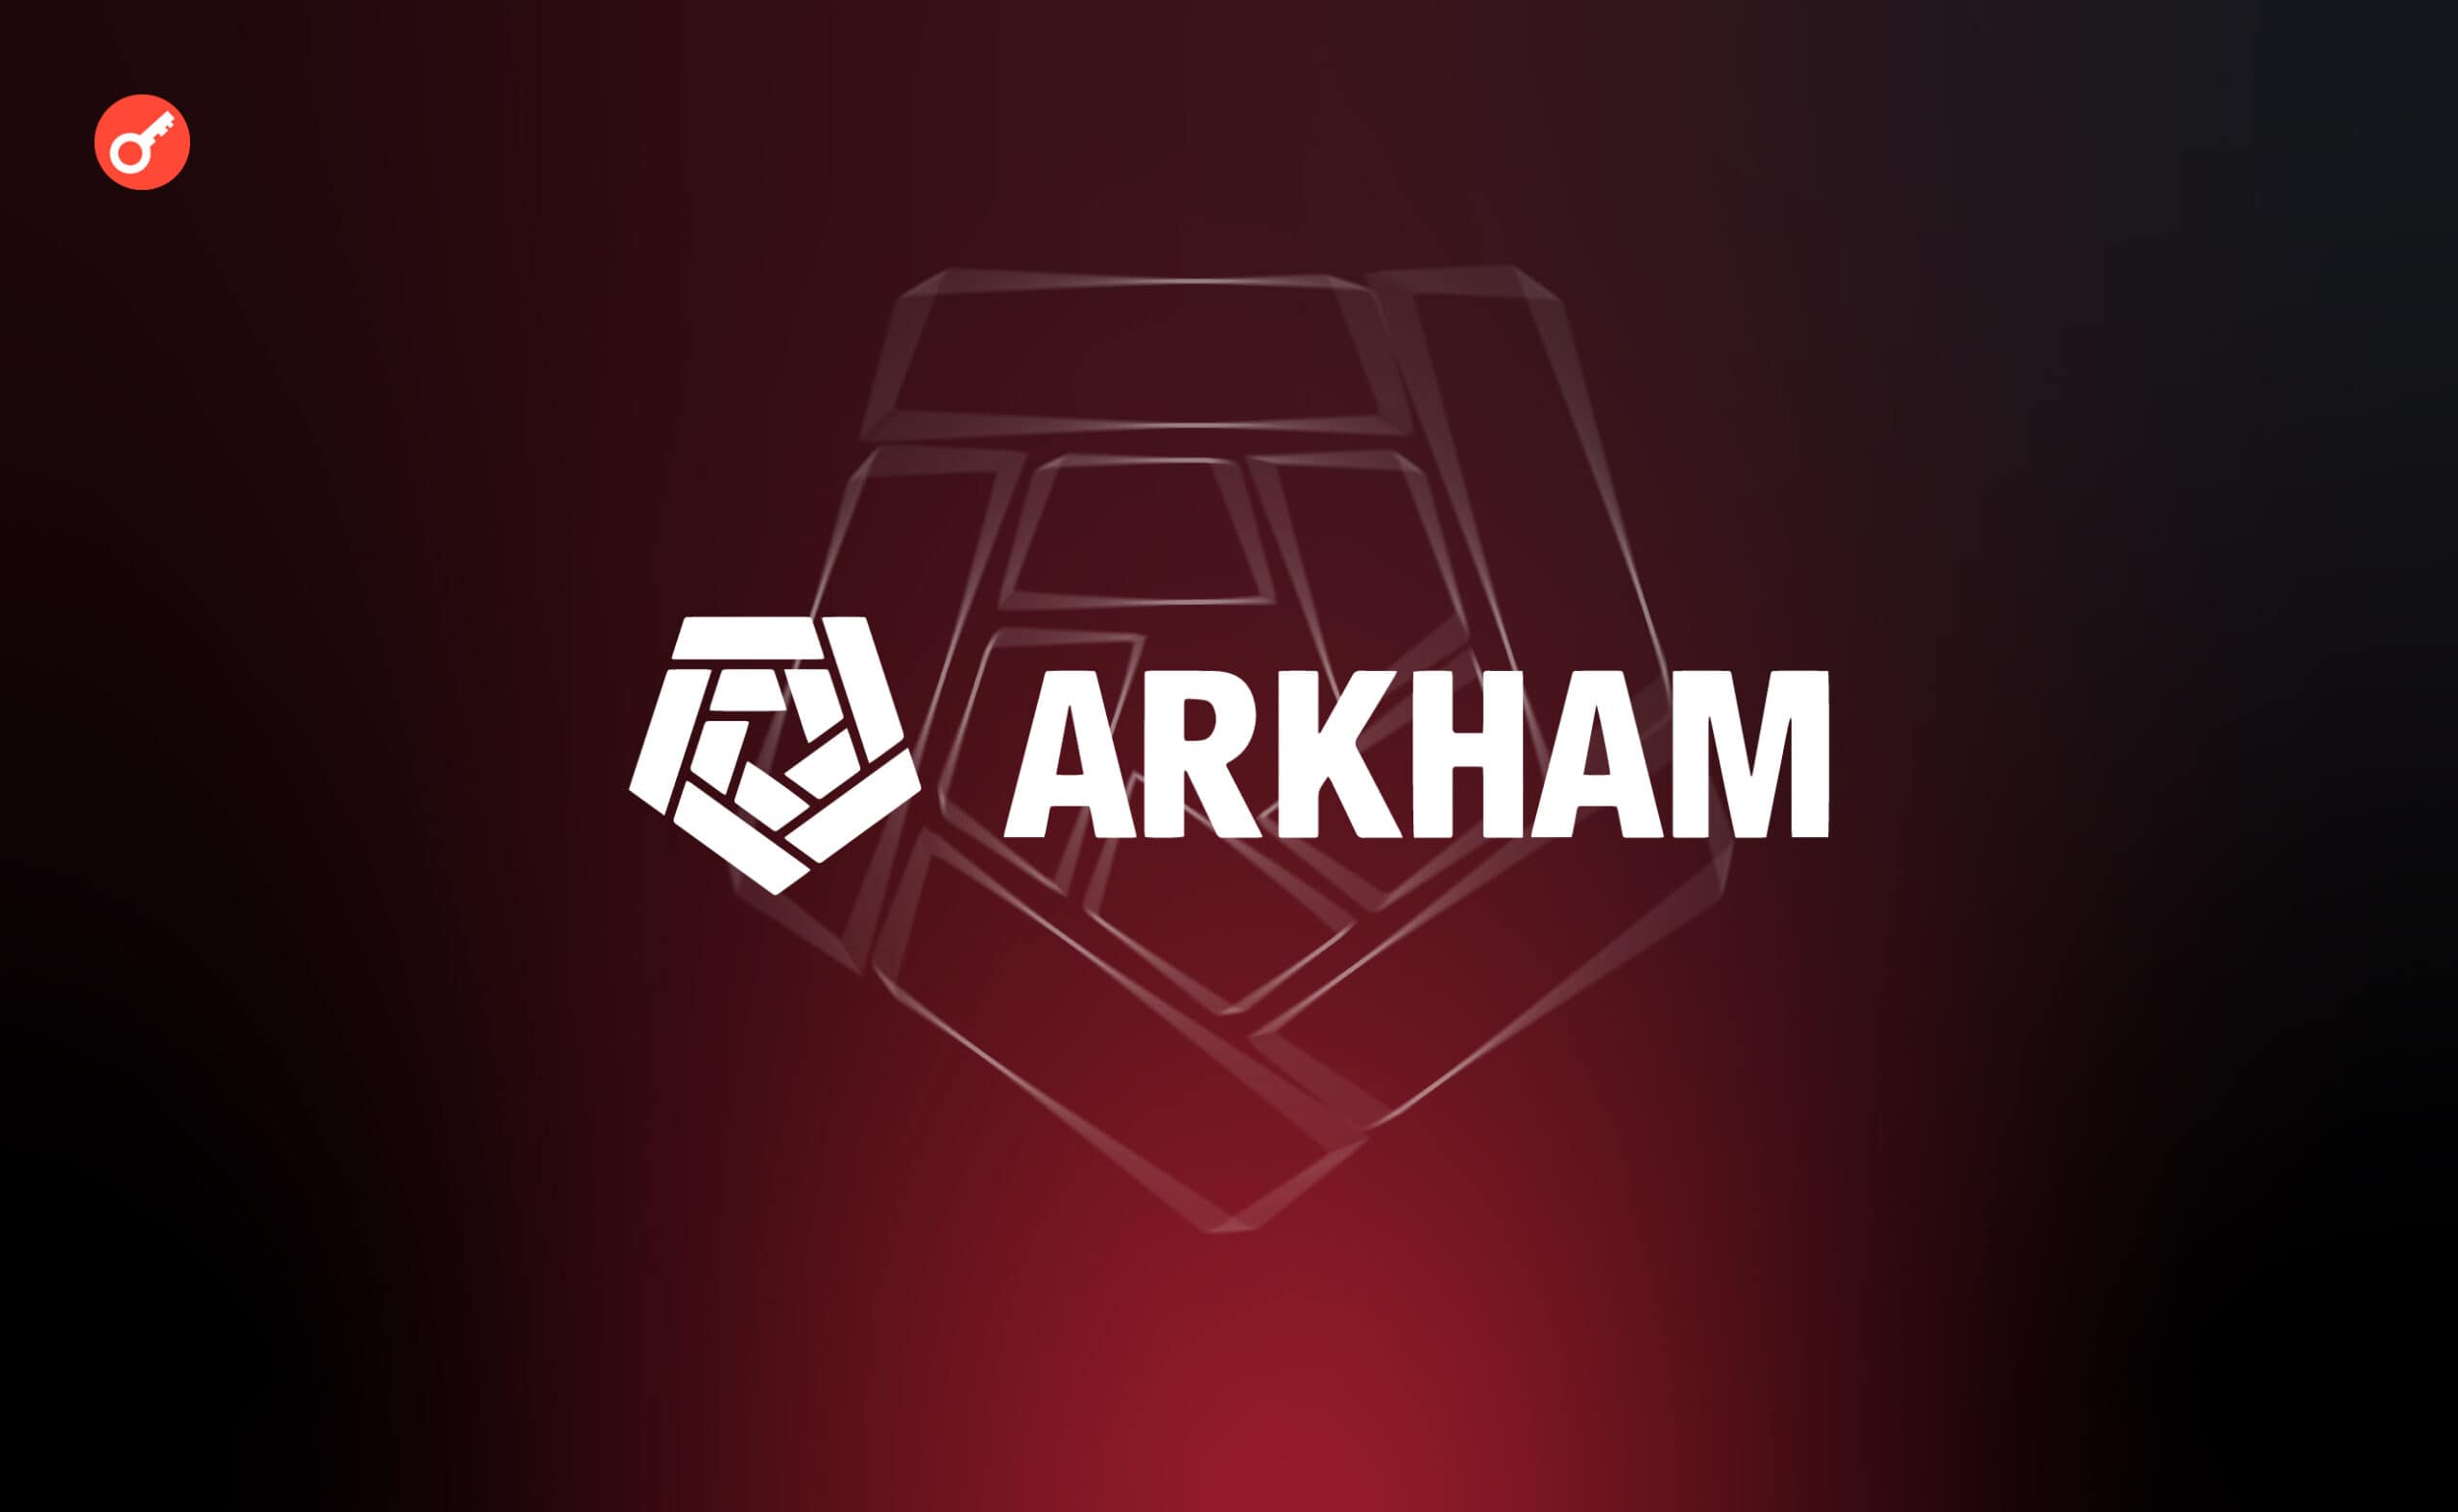 Arkham знайшла десятки гаманців із завислими на блокчейн-мостах мільйонами доларів. Головний колаж новини.